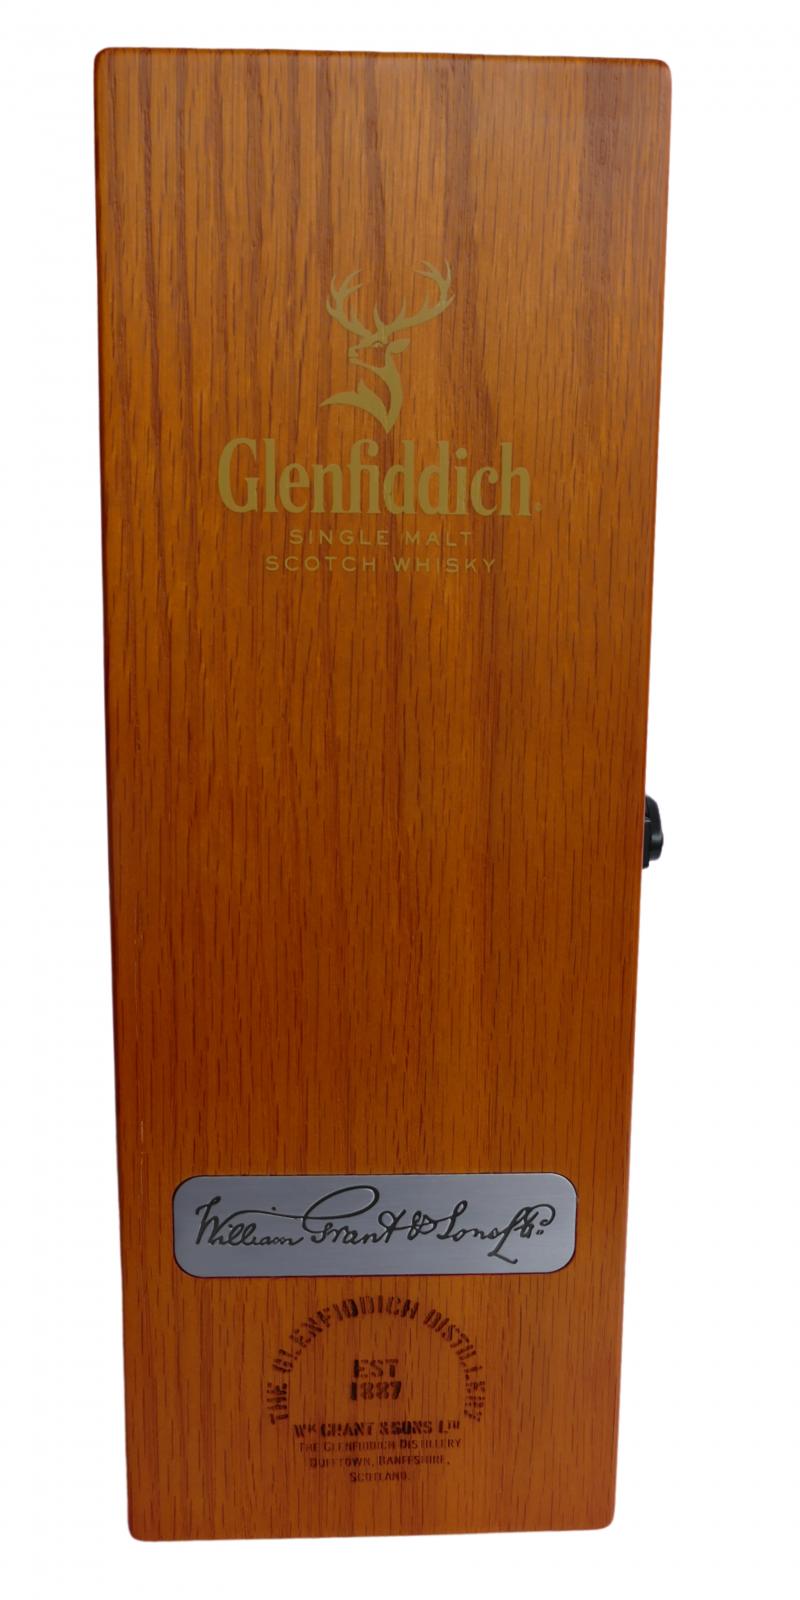 Glenfiddich 15-year-old CS